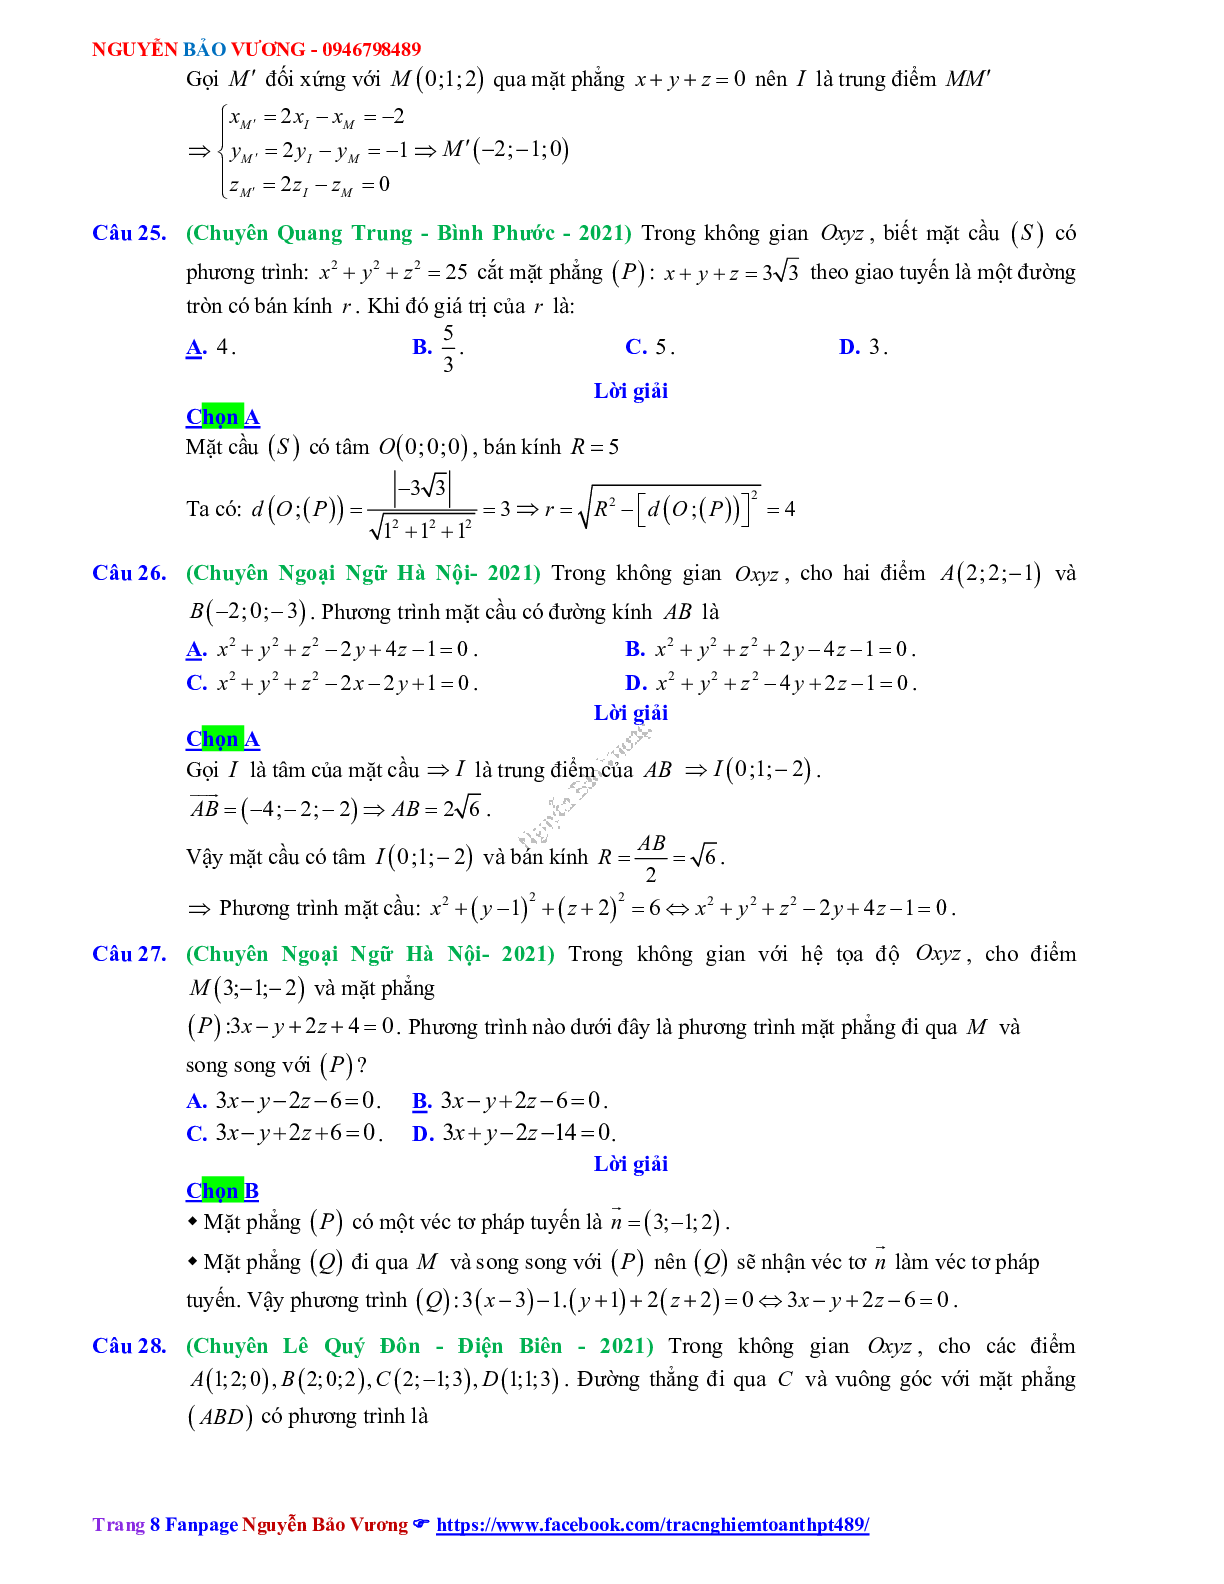 Trắc nghiệm Ôn thi THPT QG Toán 12: Đáp án phương pháp tọa độ trong không gian mức độ thông hiểu (trang 8)